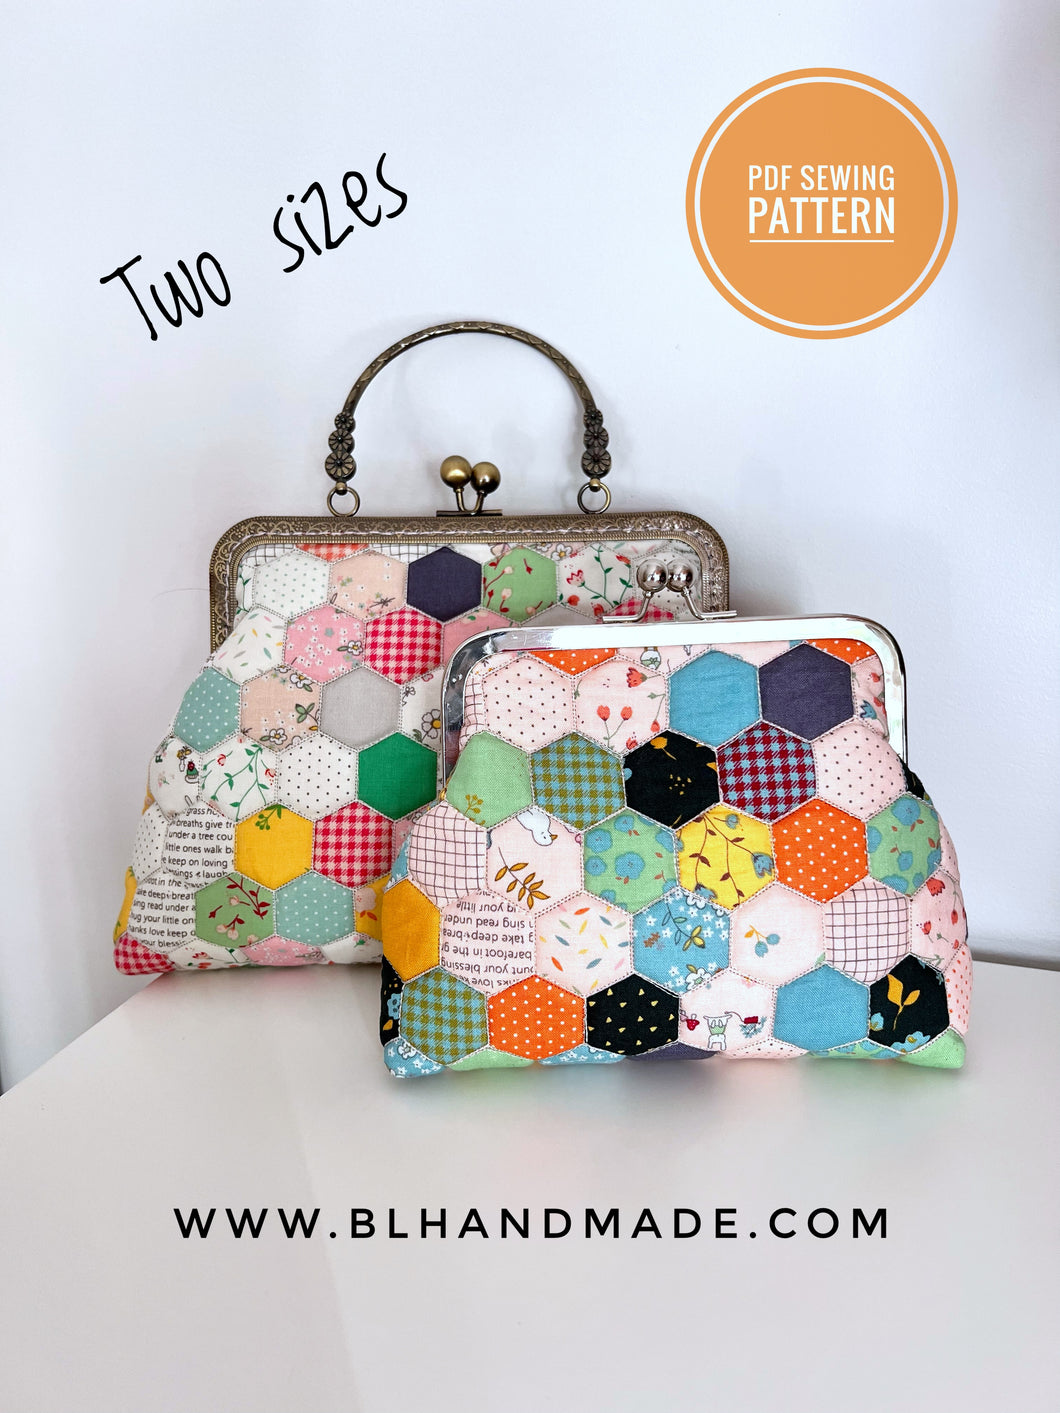 Purse with metal frame PDF sewing pattern; DIY Bag; Shoulder bag tutorial; Bag PDF Sewing Pattern; Clutch bag pattern; Clasp purse; Sew in purse frame; Purse frame pattern; Clasp purse pattern